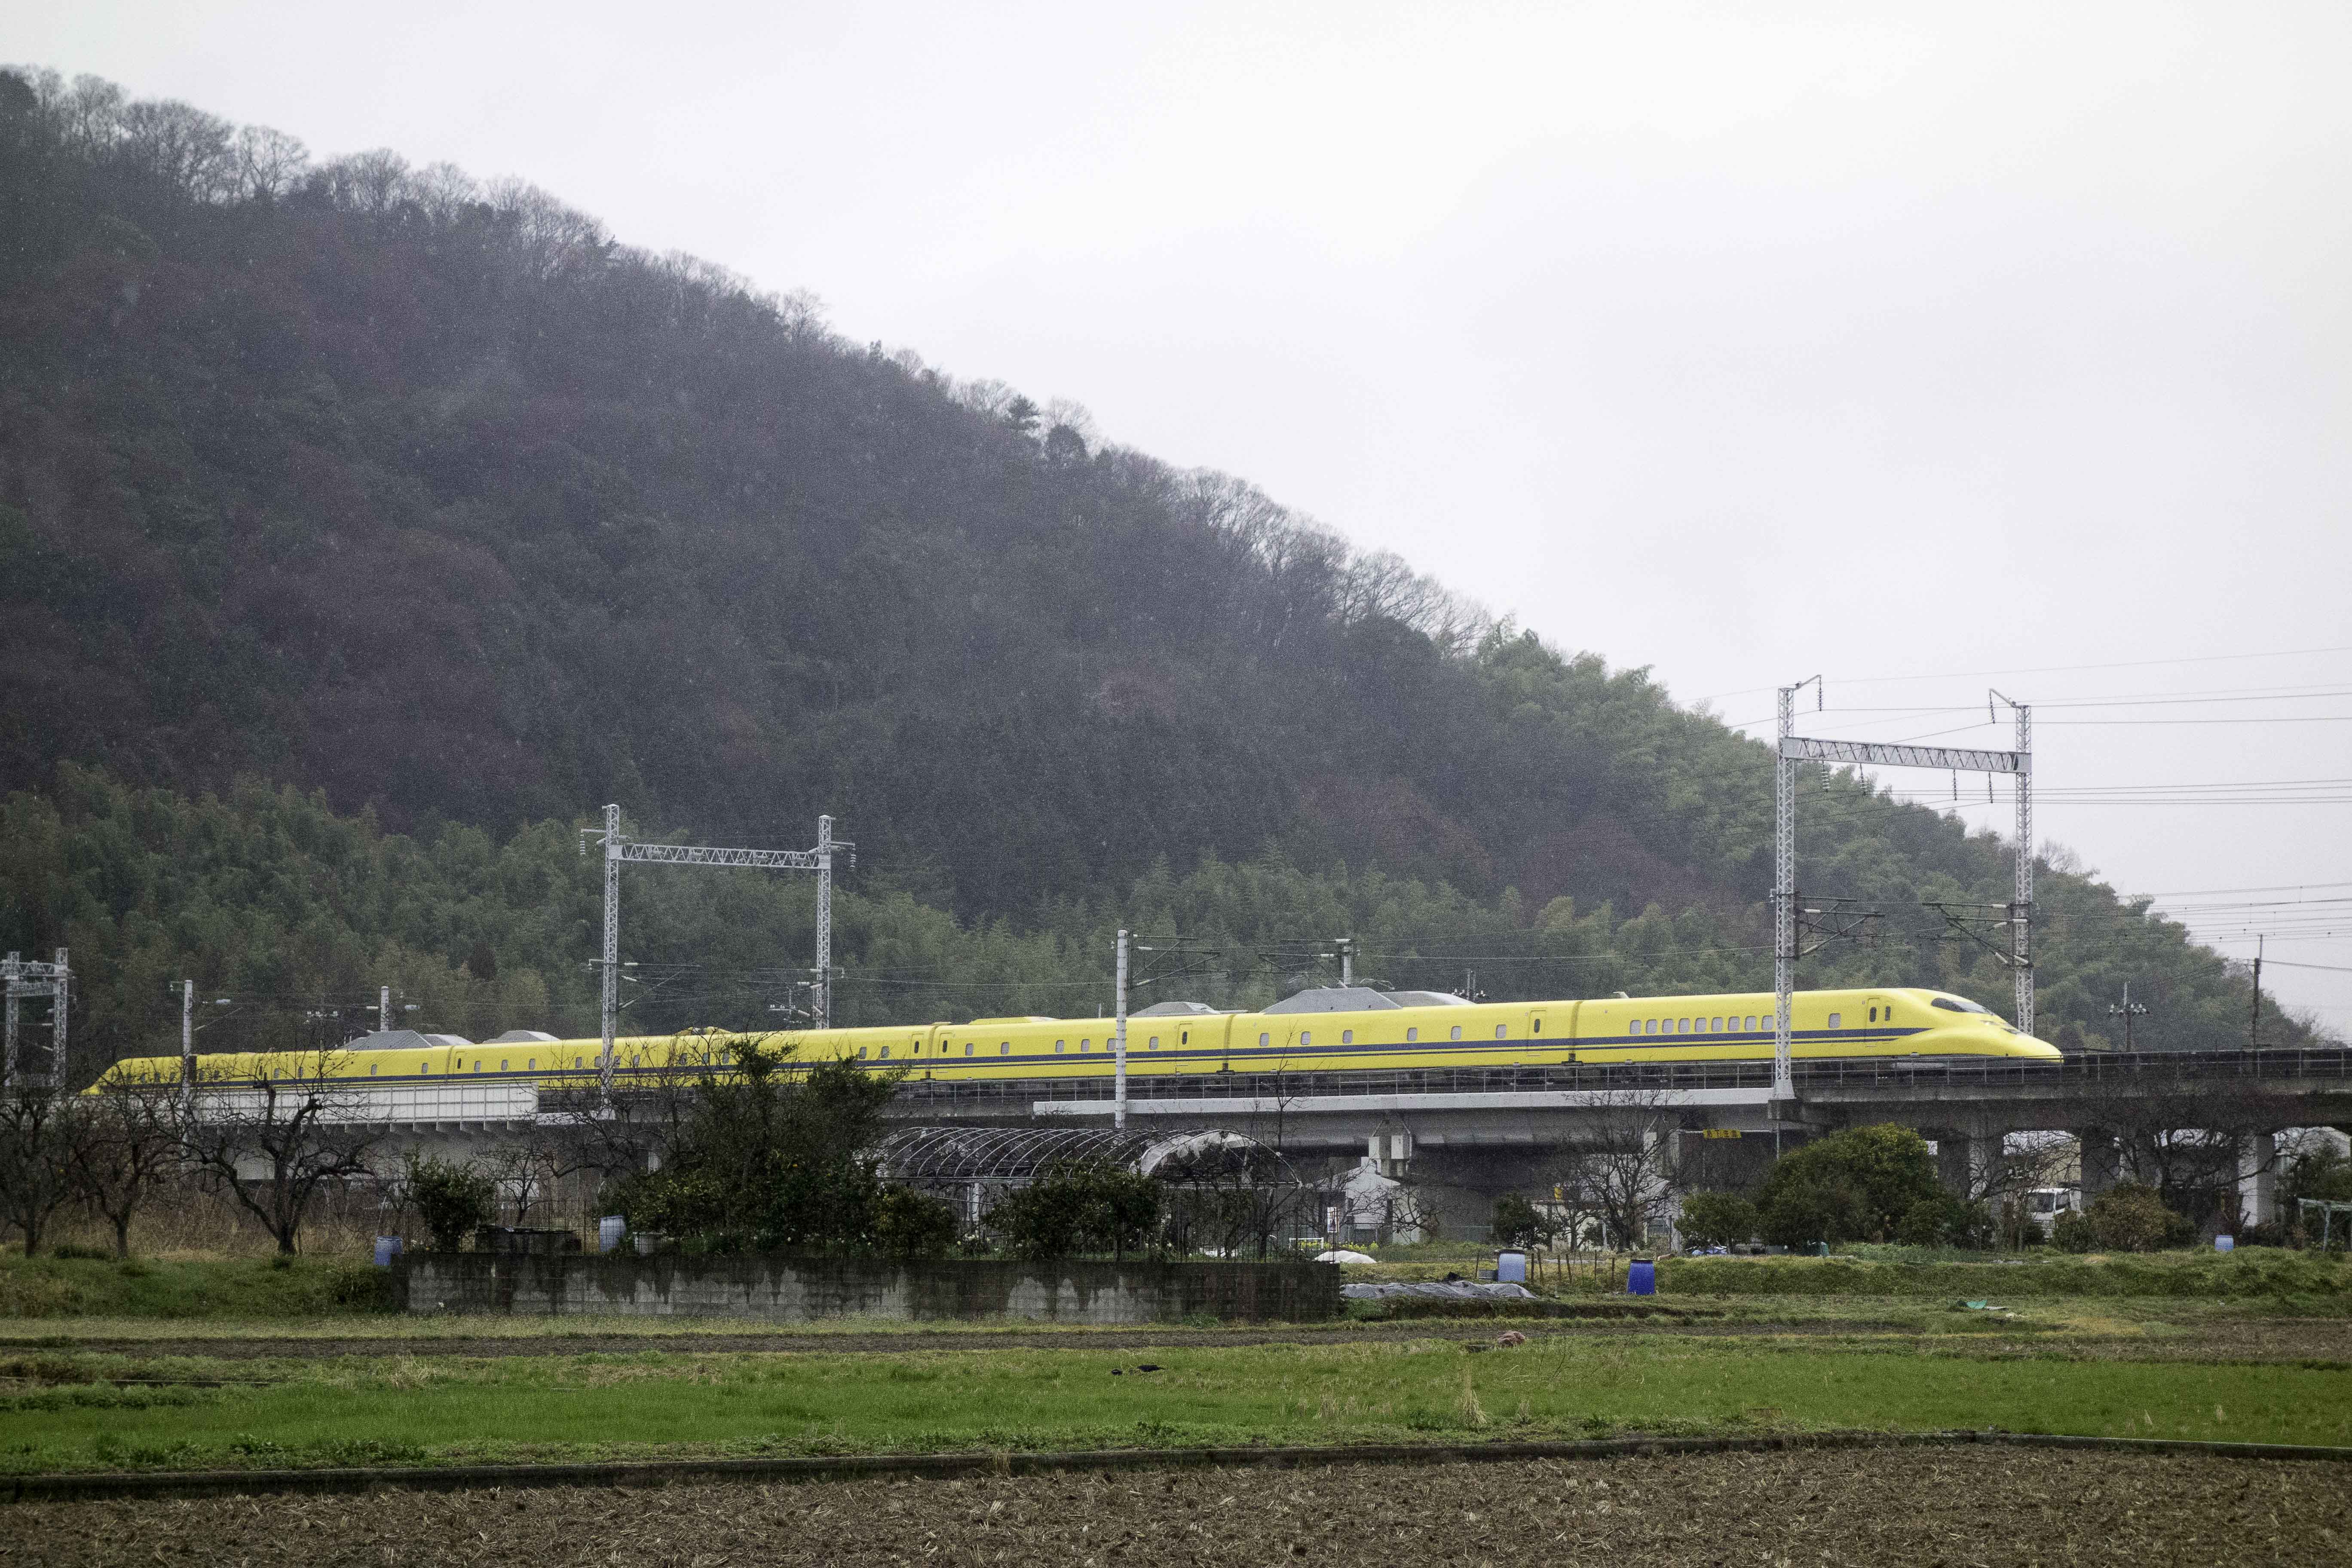 雨の日の新幹線撮影は最高のシャッターチャンス